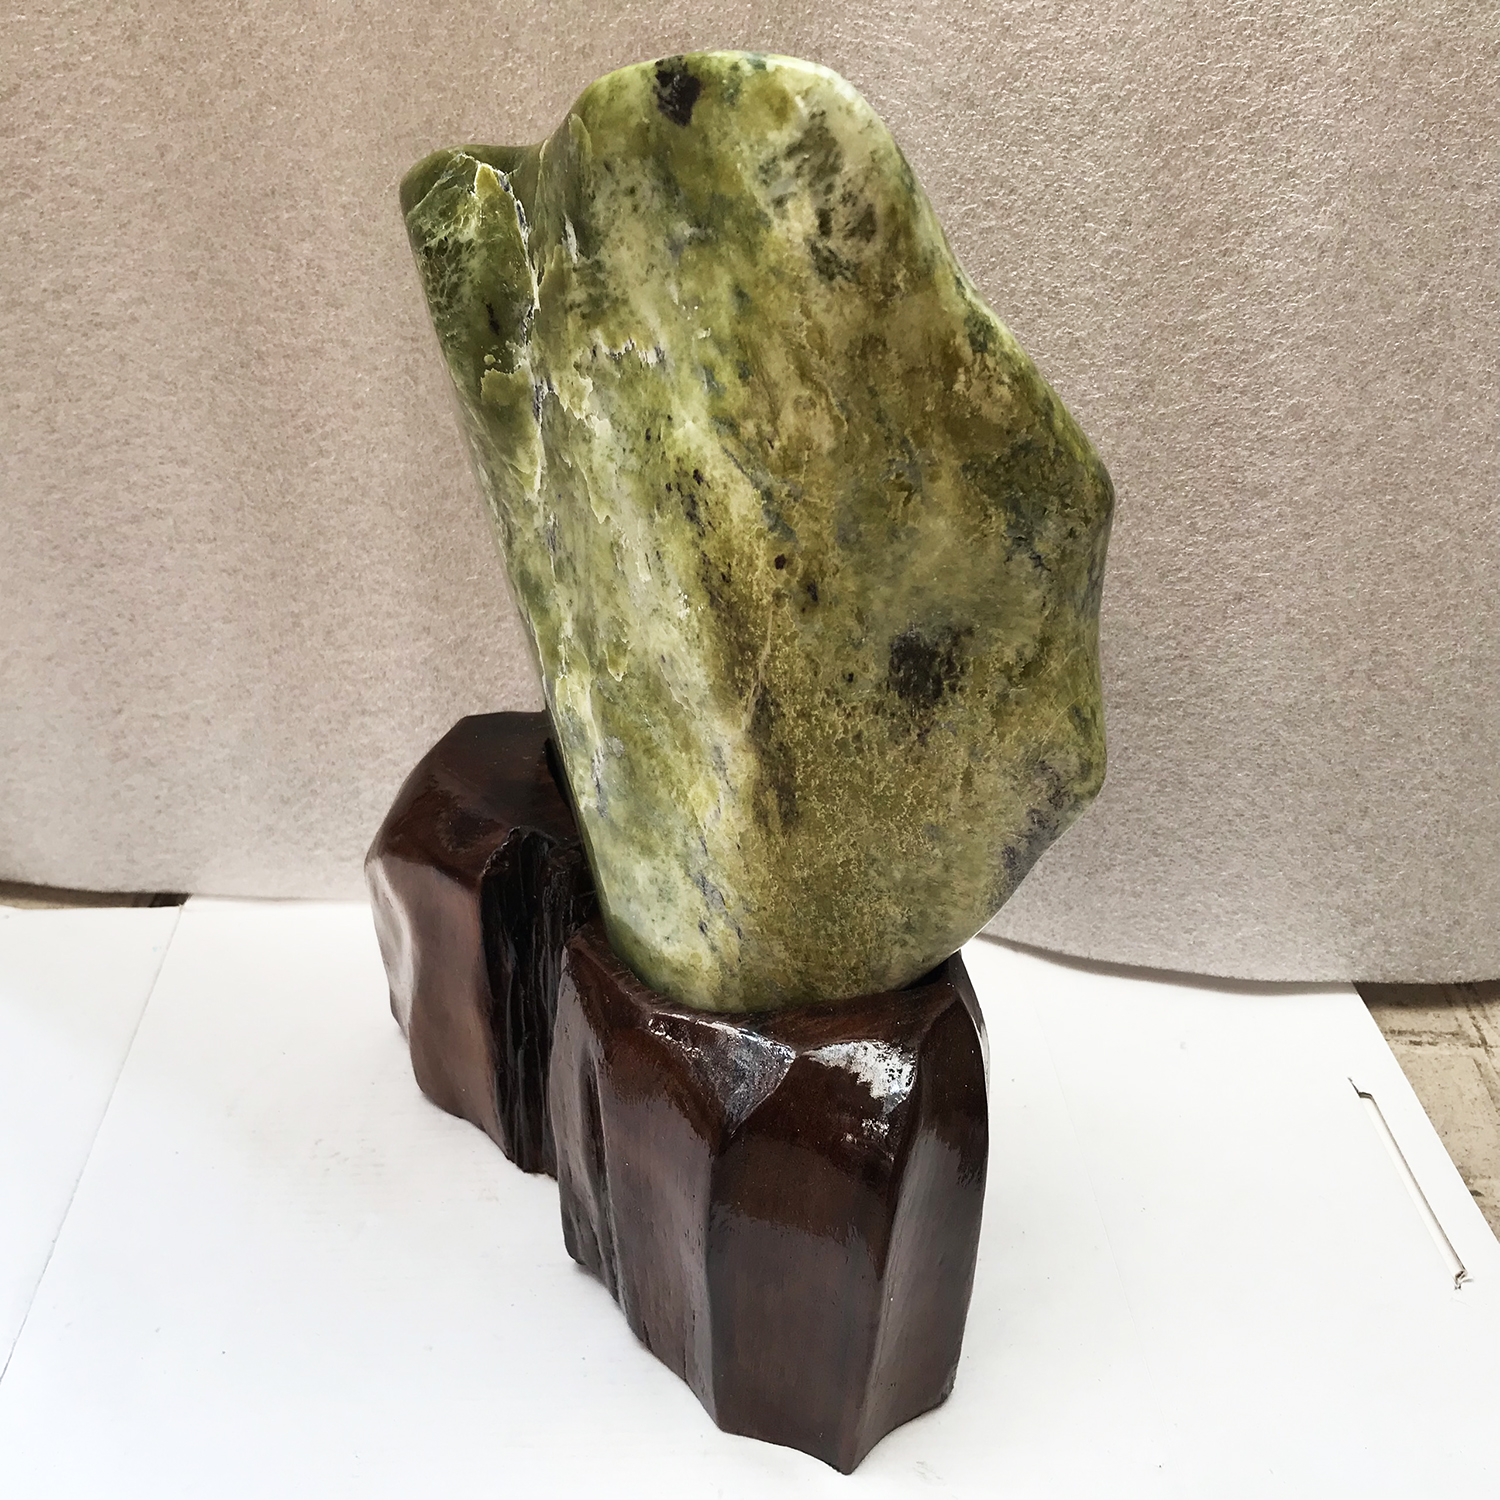 Cây đá phong thủy cao 47cm, nặng 13 kg cho người mệnh Mộc và Hỏa tự nhiên chất ngọc serpentine màu xanh đậm và bóng